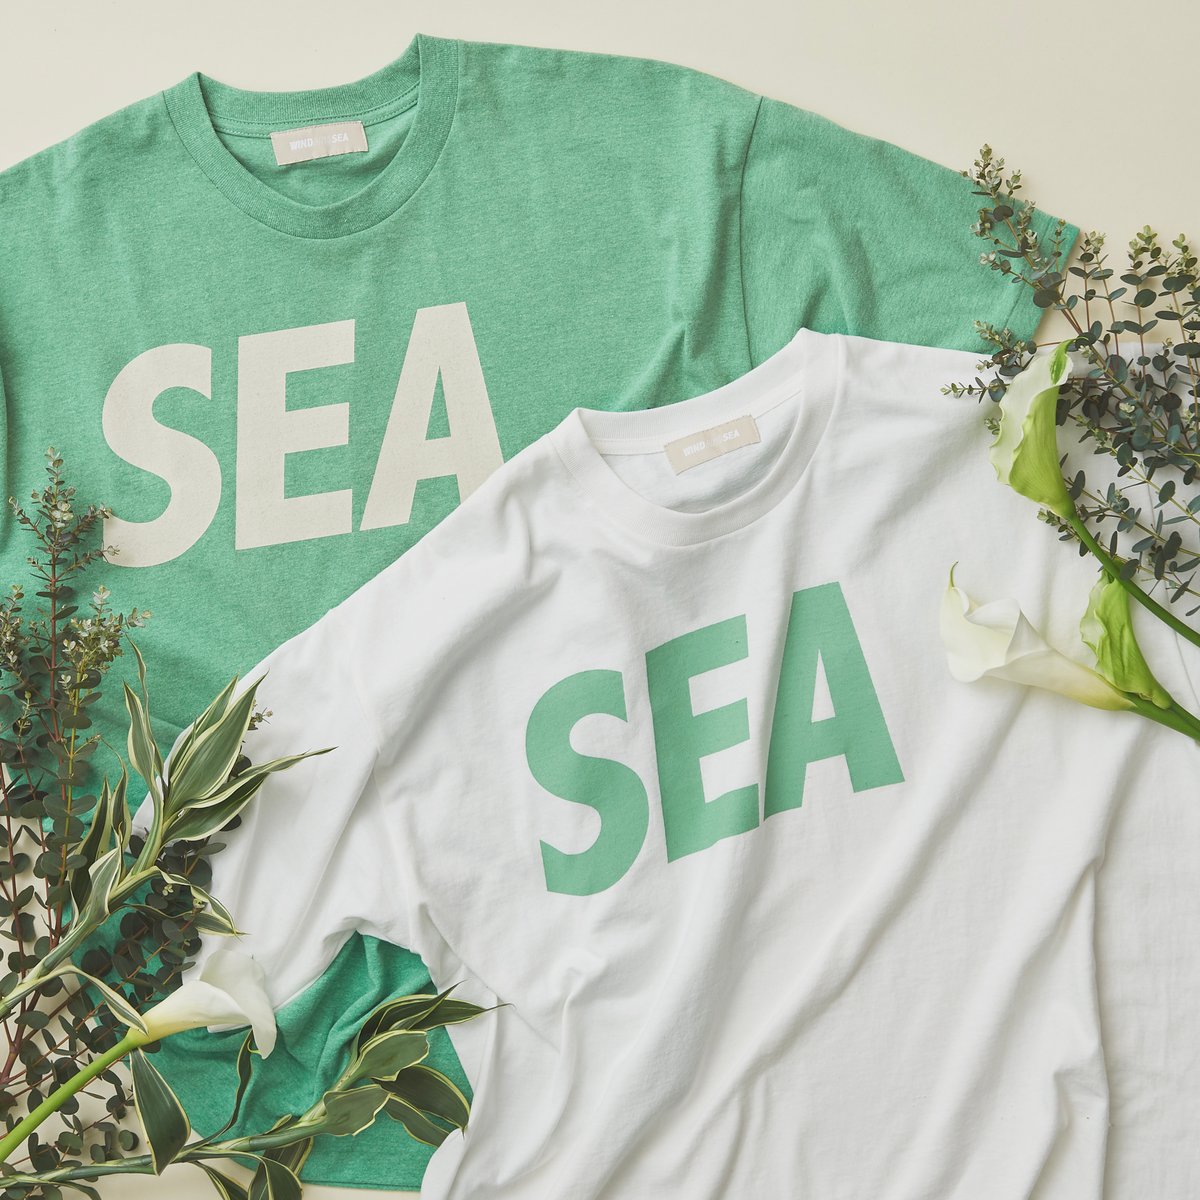 胸元に「SEA」のロゴを配したホワイトとグリーンのオーガニックコットンTシャツ